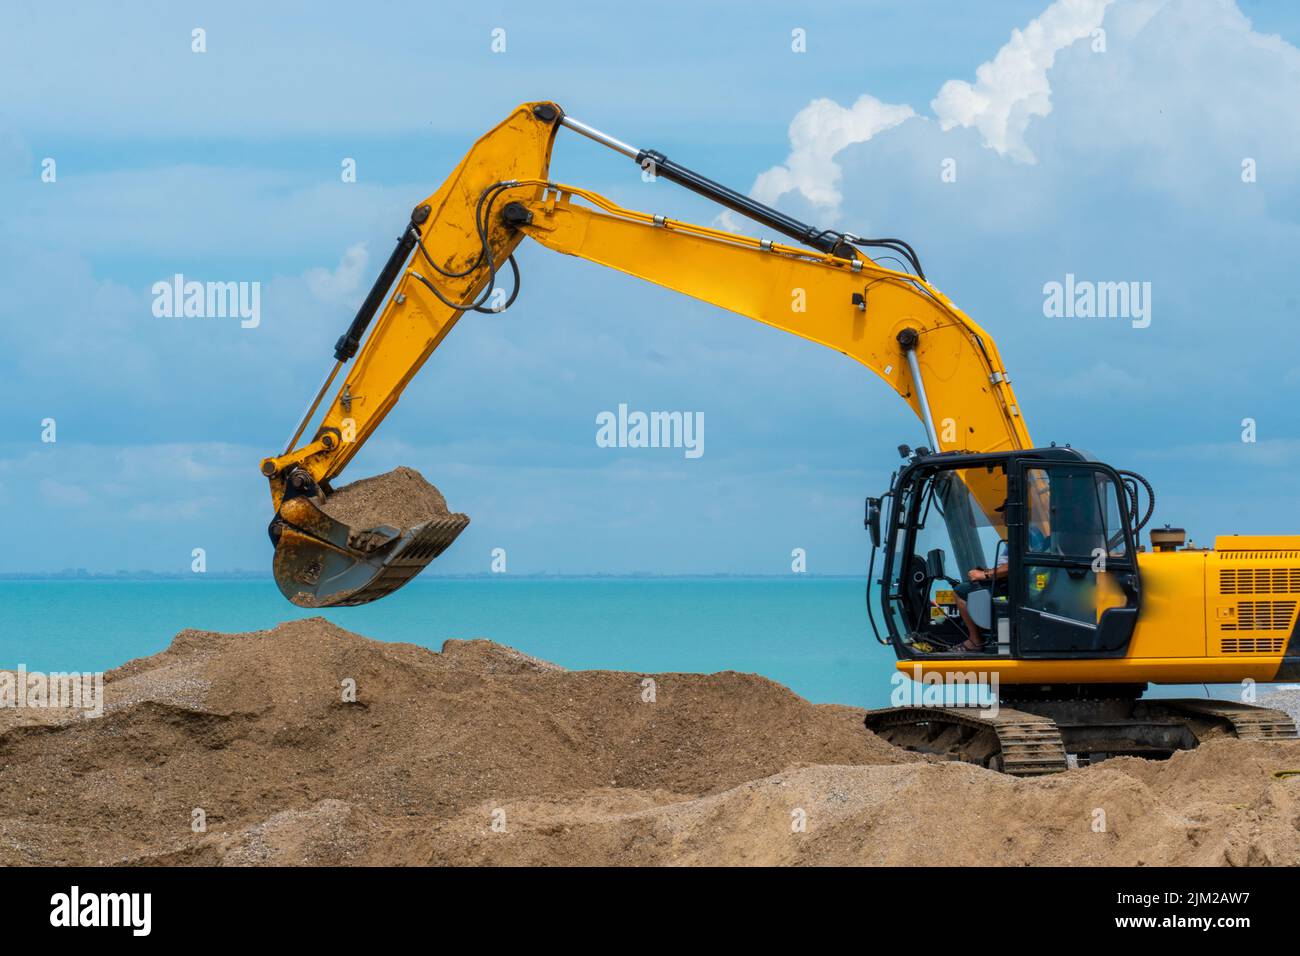 Industrie pétrolière construction d'excavateurs de mer pour machines lourdes activités de silhouette de sable, du godet minier pour l'excavation et la terre de puissance, excavation jaune Banque D'Images